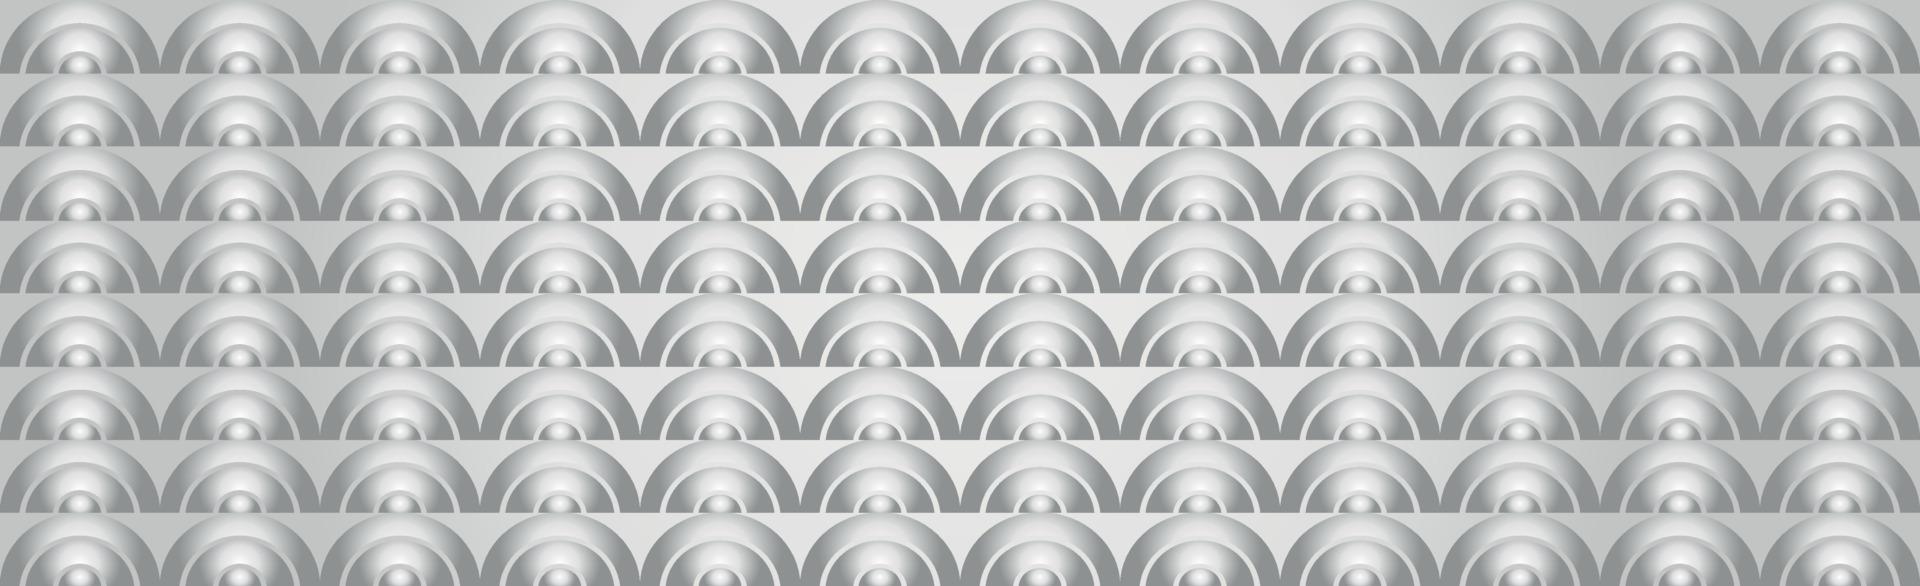 abstrait gris - rectangles volumétriques blancs - vecteur